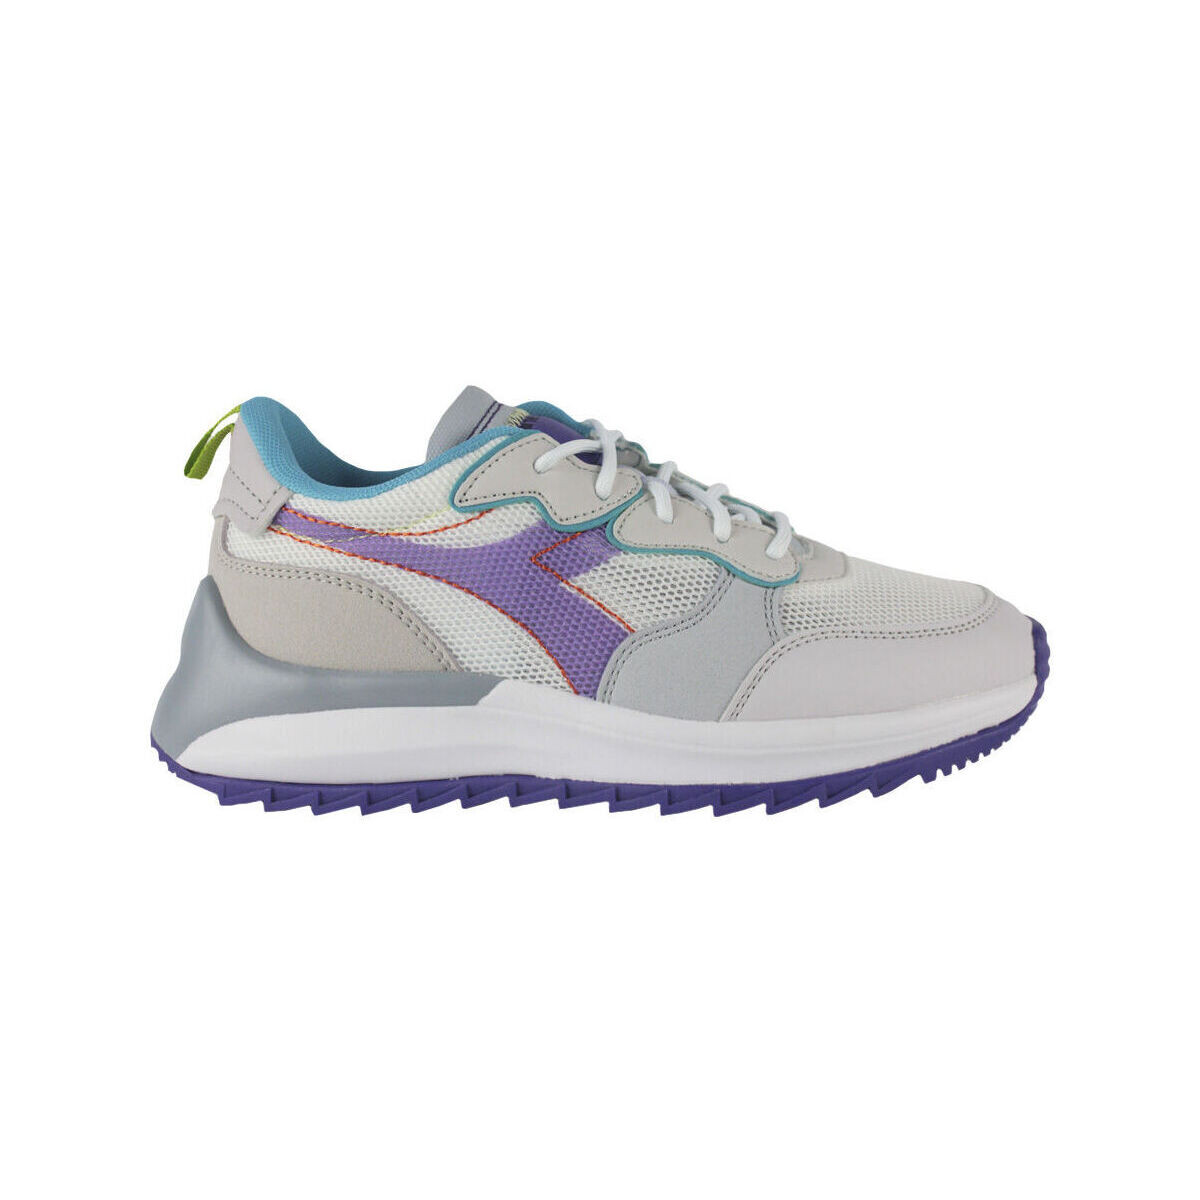 Sko Dame Sneakers Diadora 501.178302 01 C9721 Halogen blue/English lave Violet